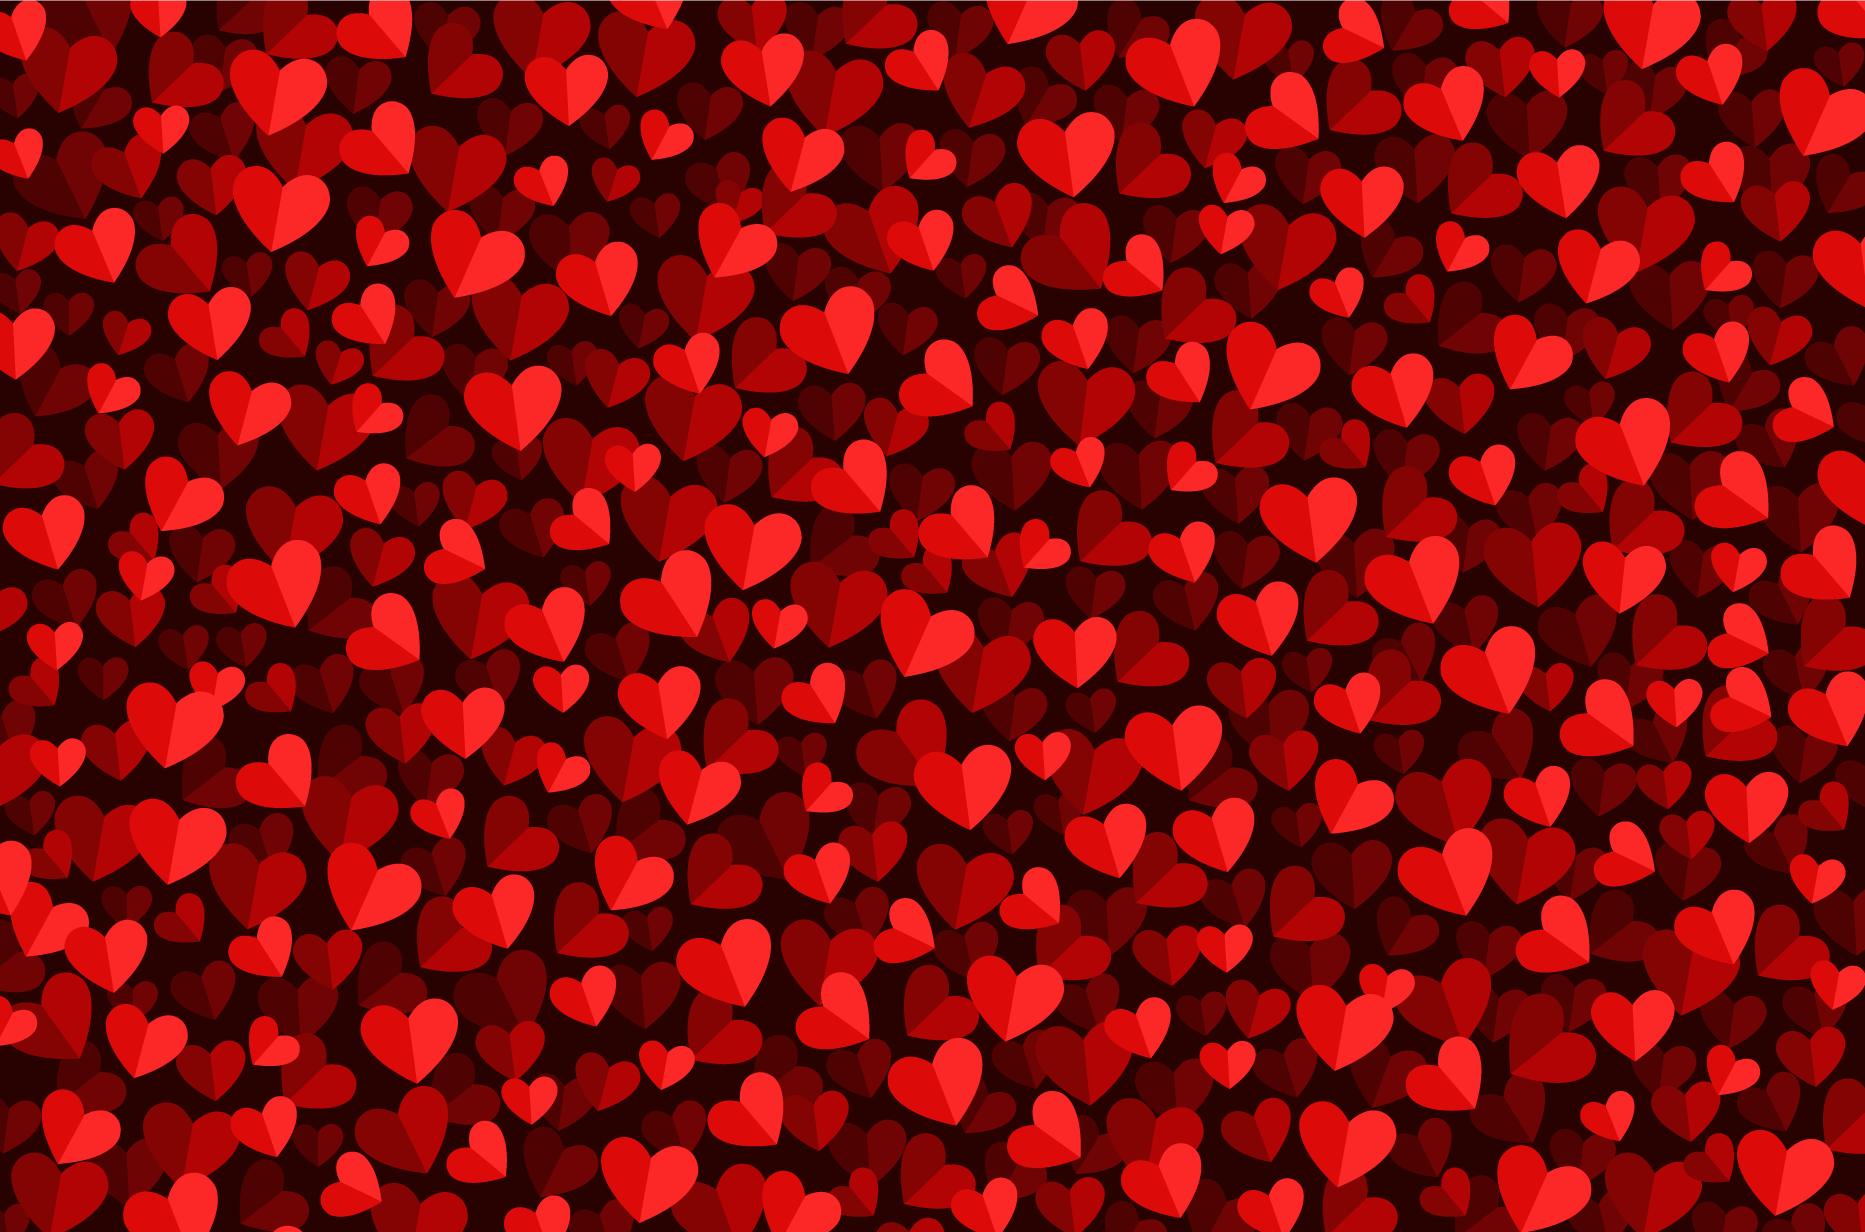 Vector nền Trái tim đỏ sẽ cho bạn một trải nghiệm đầy tình yêu và cảm xúc. Hình ảnh được thiết kế một cách tinh tế và chi tiết với tông đỏ truyền thống sẽ khiến cho bức ảnh trở nên đẹp mắt và cuốn hút.